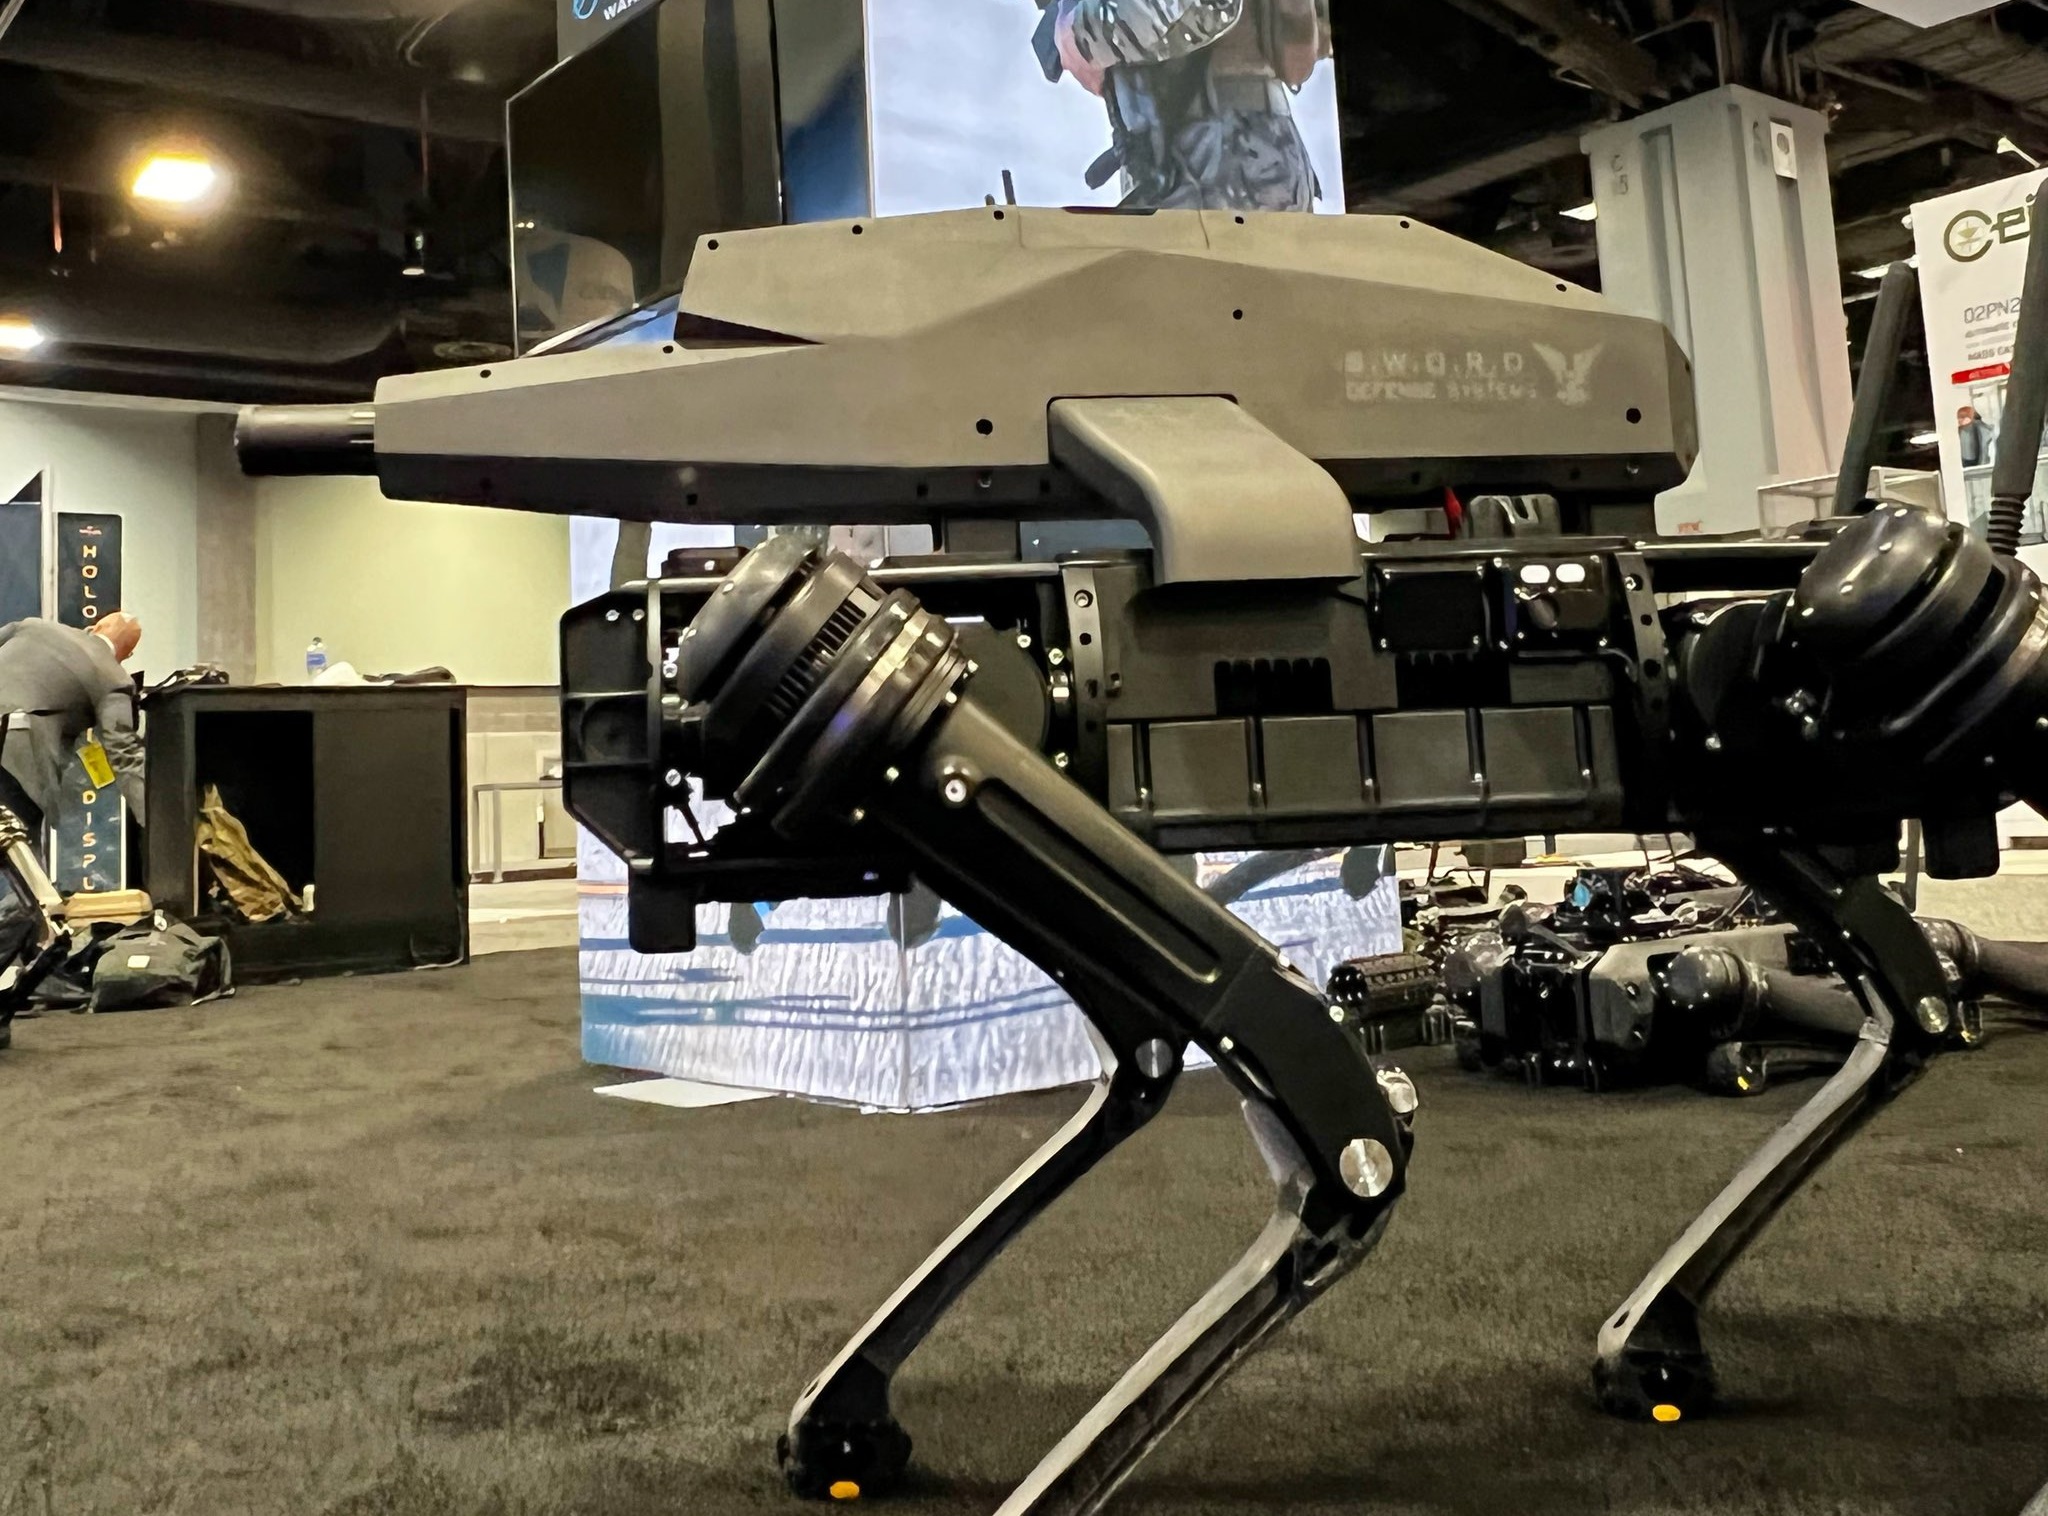 Fegyveres robotkutyát mutattak be az amerikai hadsereg expóján